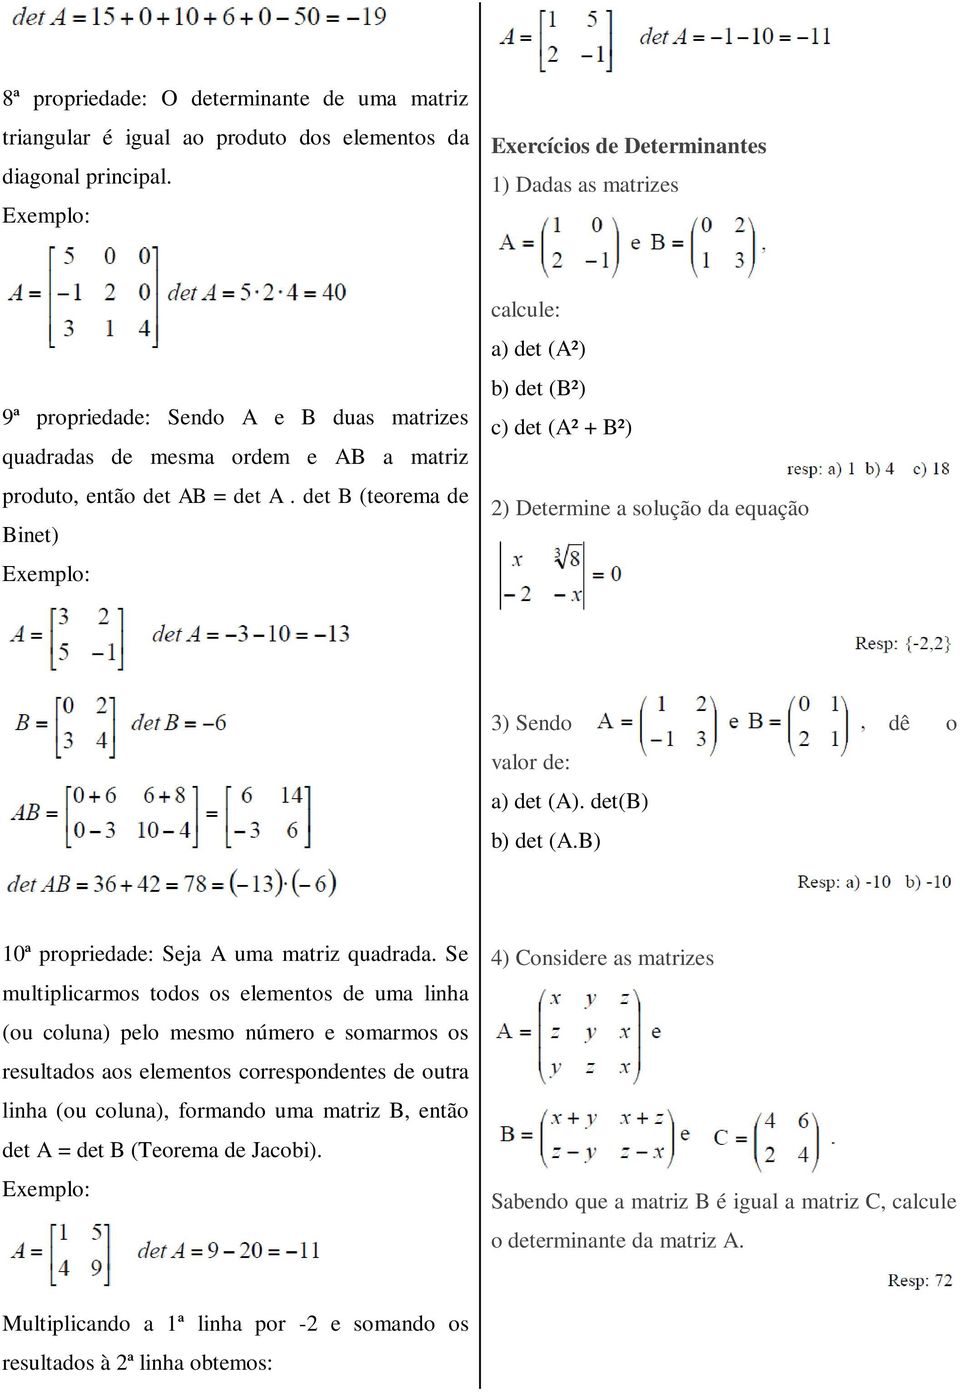 det B (teorema de Binet) calcule: a) det (A²) b) det (B²) c) det (A² + B²) 2) Determine a solução da equação 3) Sendo dê o valor de: a) det (A). det(b) b) det (A.